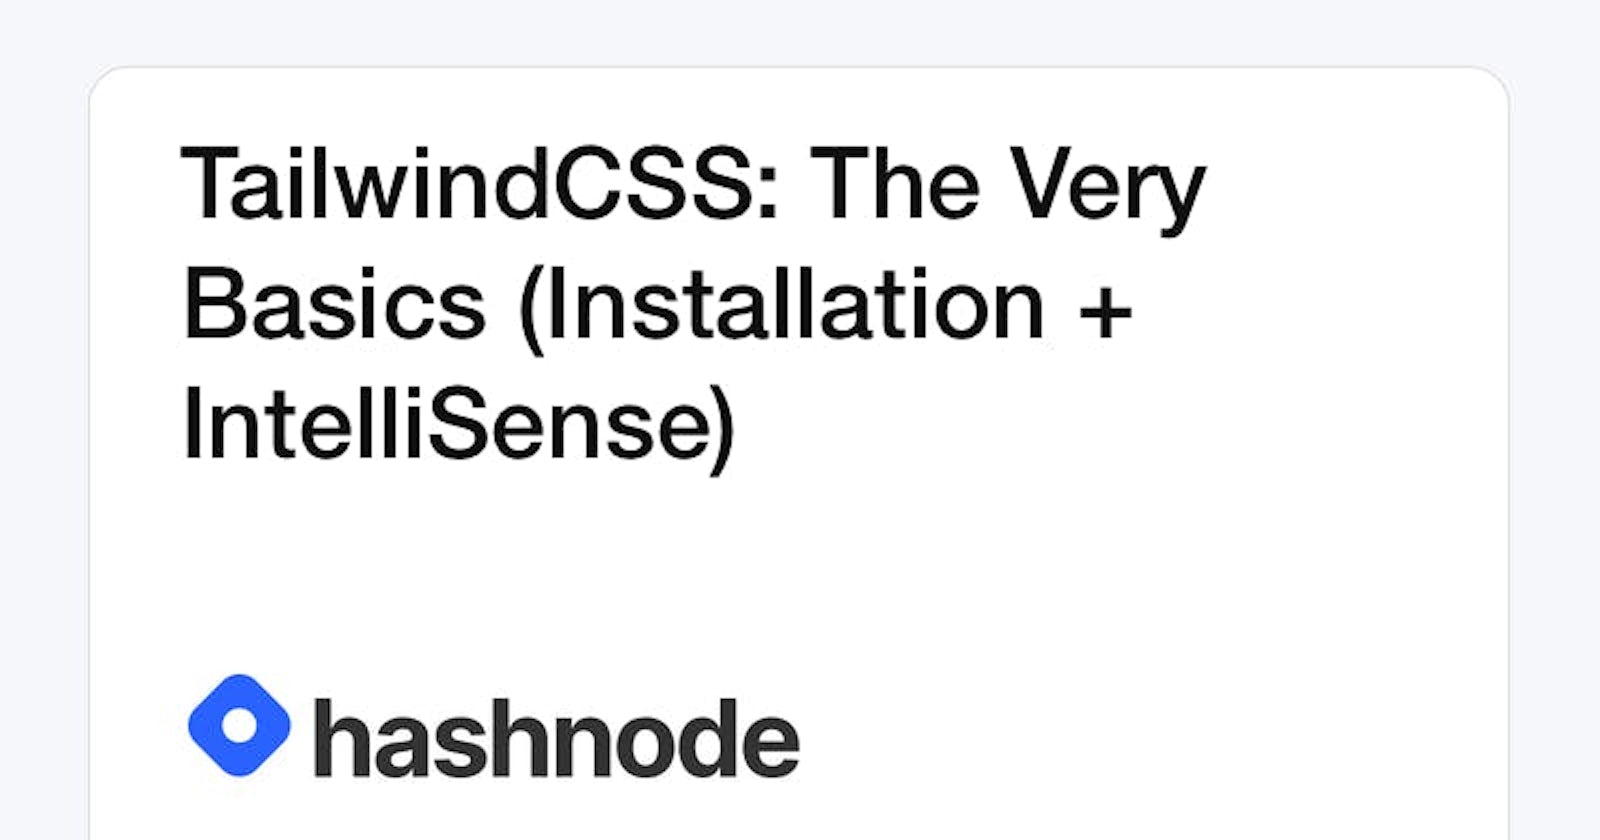 TailwindCSS: The Very Basics (Installation + IntelliSense)